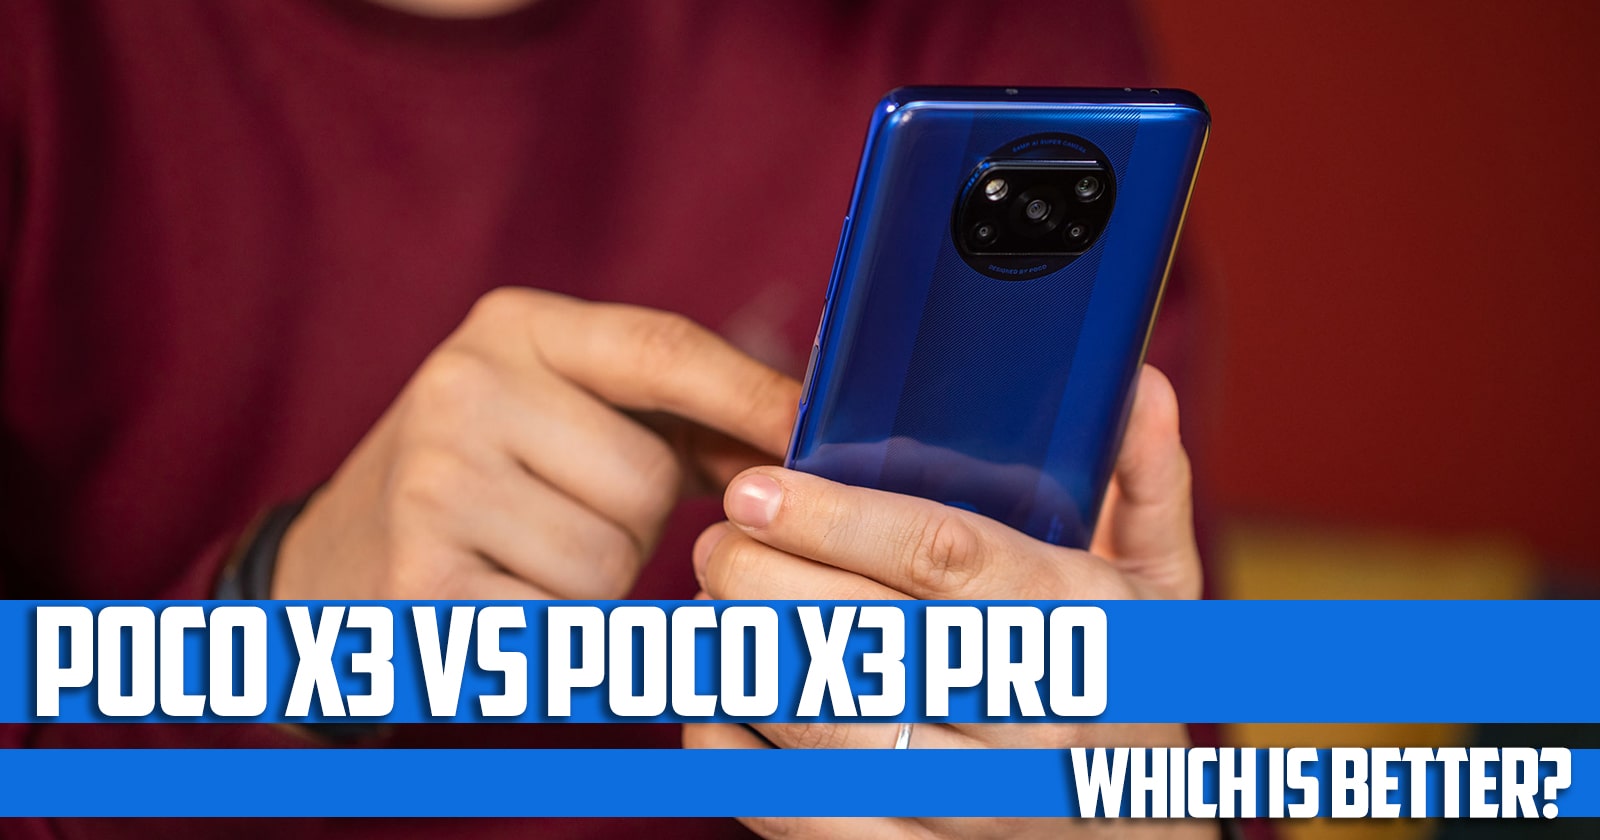 poco x3 vs poco x3 pro, which is better?